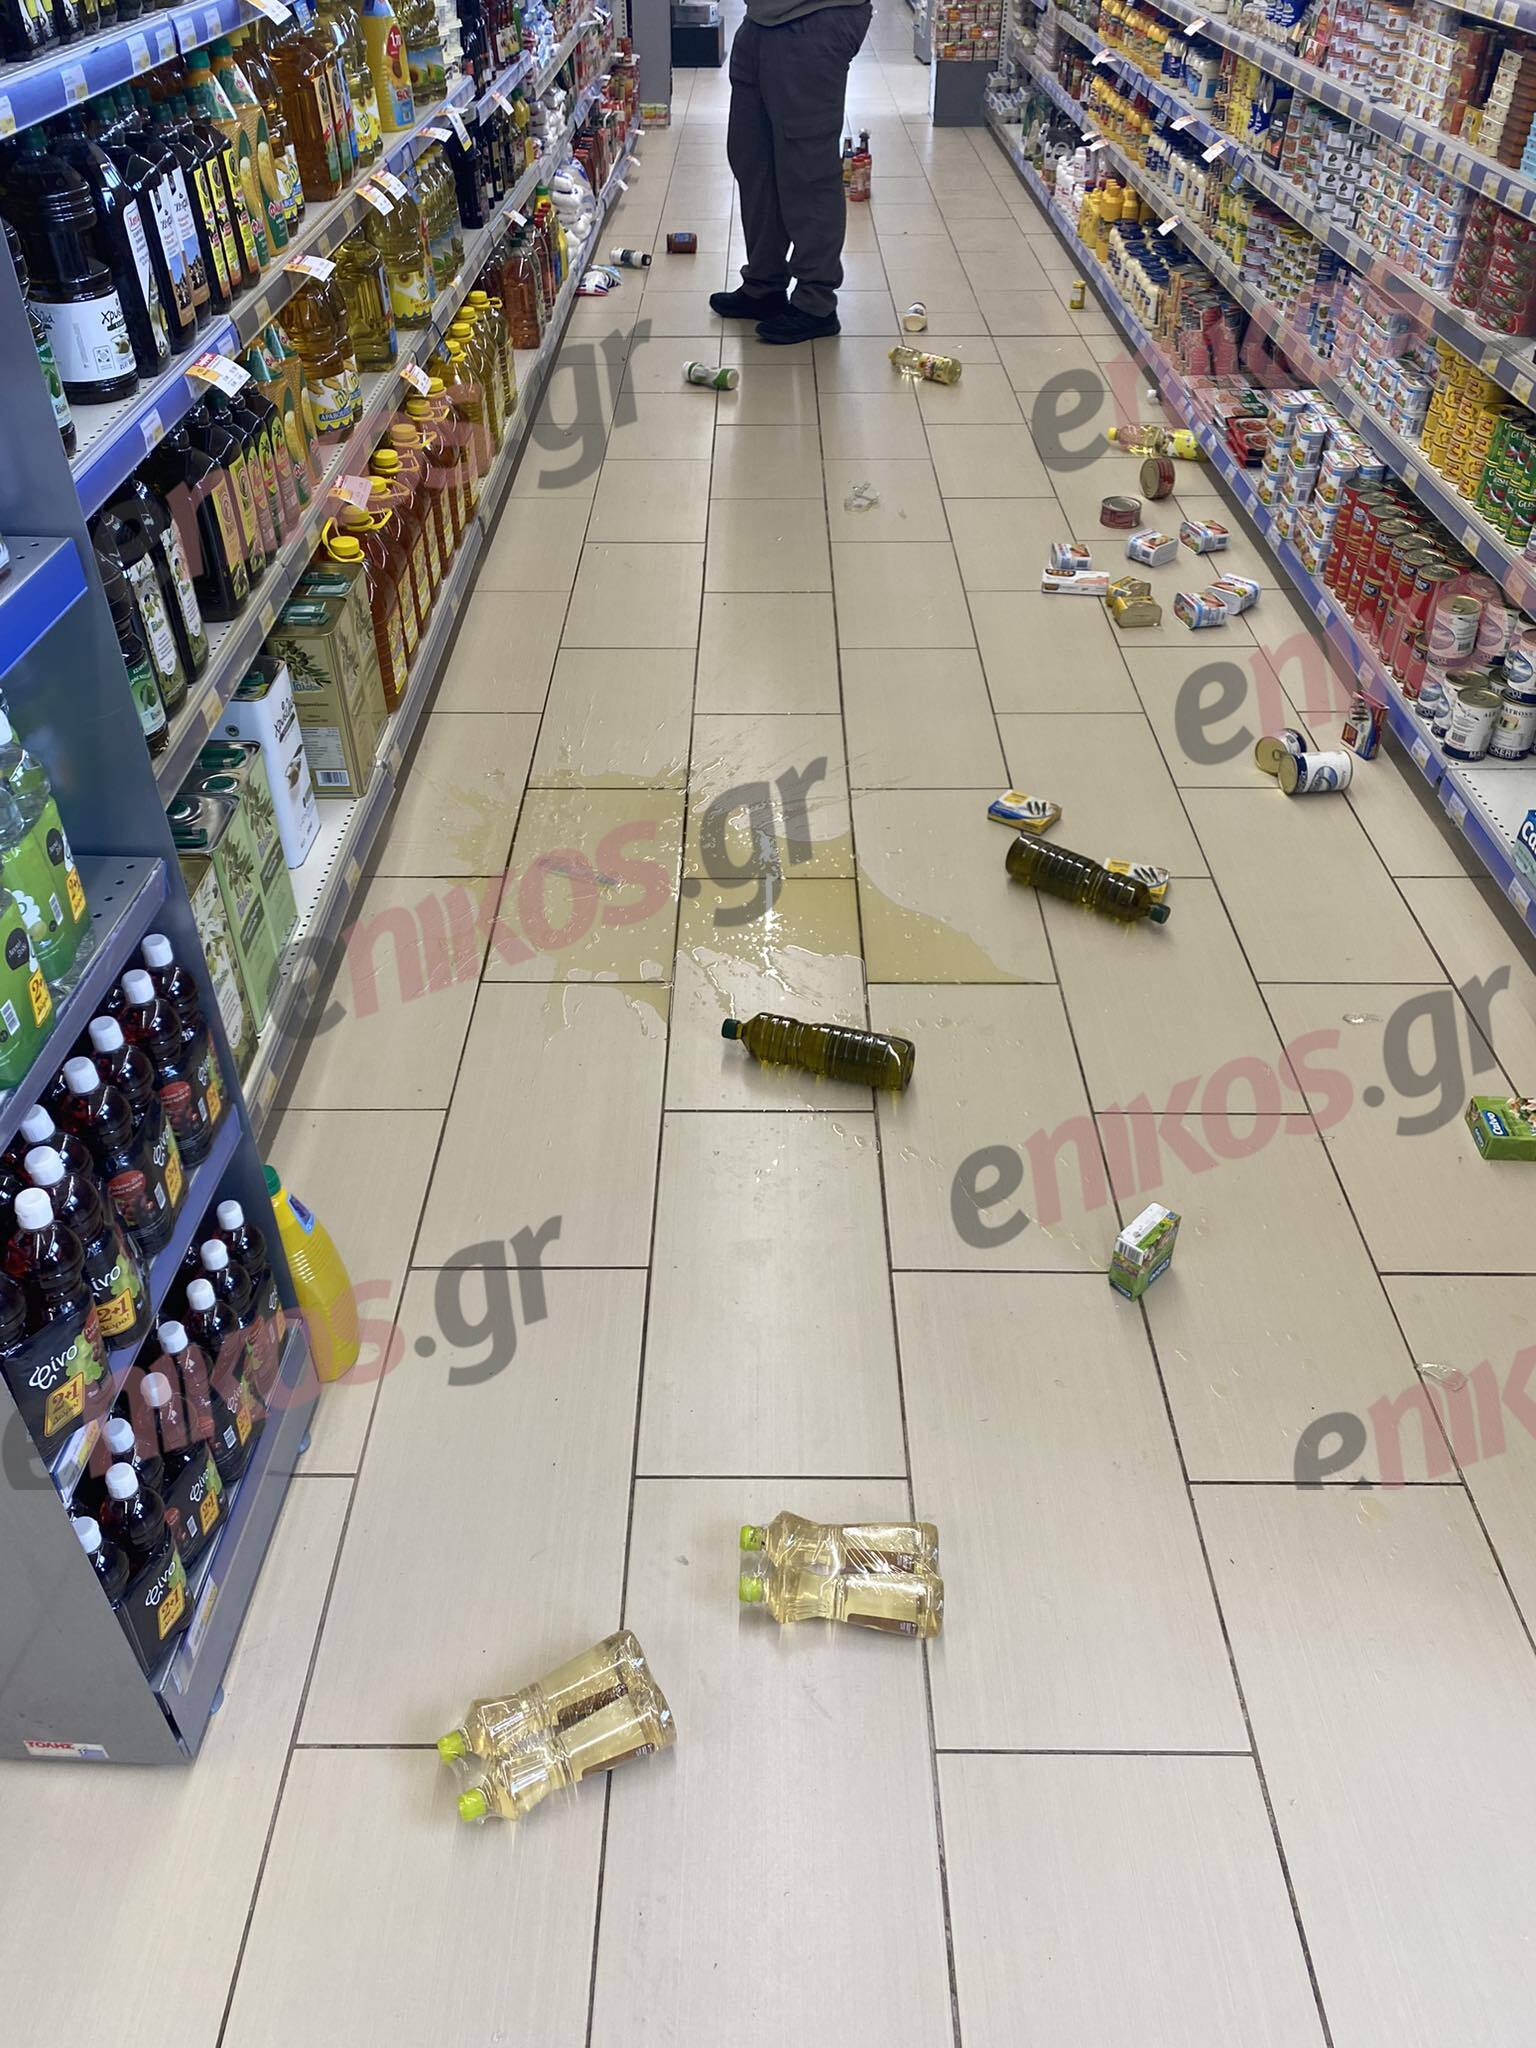 σούπερ μάρκετ σεισμός Μαντούδι  Σεισμός στην Εύβοια: Έπεσαν προϊόντα από τα ράφια σούπερ μάρκετ στο Μαντούδι – Έκλεισαν τα σχολεία mantoudi seismos1